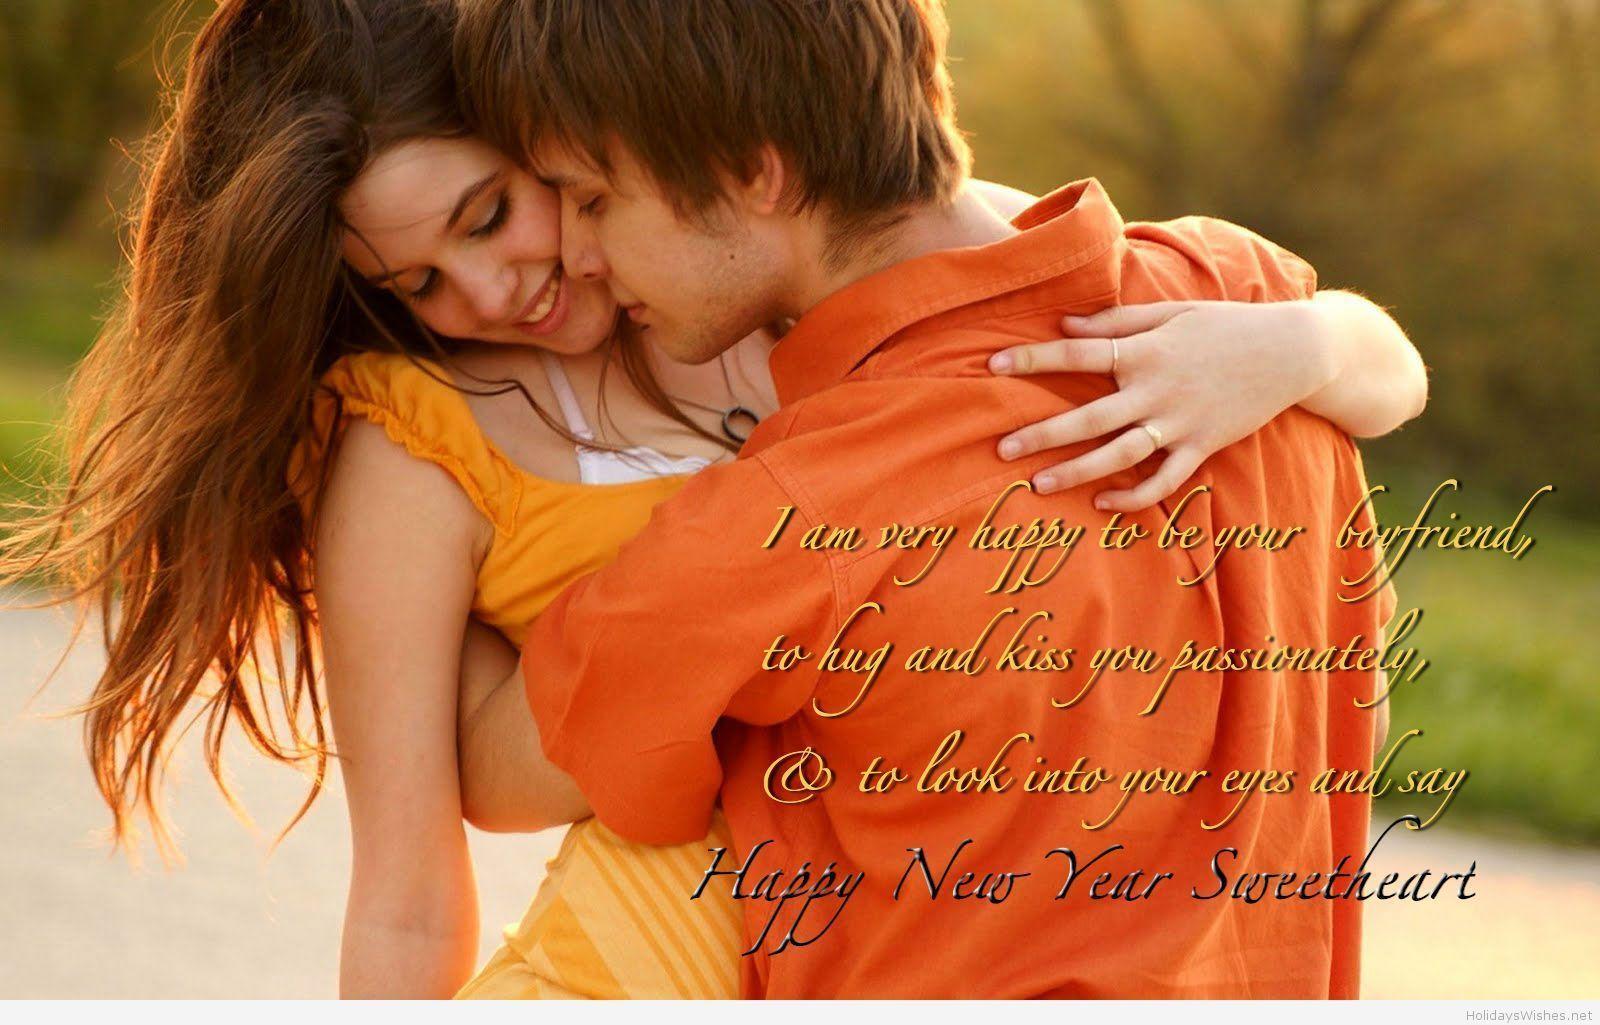 Romantic couple happy new year image quotes 2015